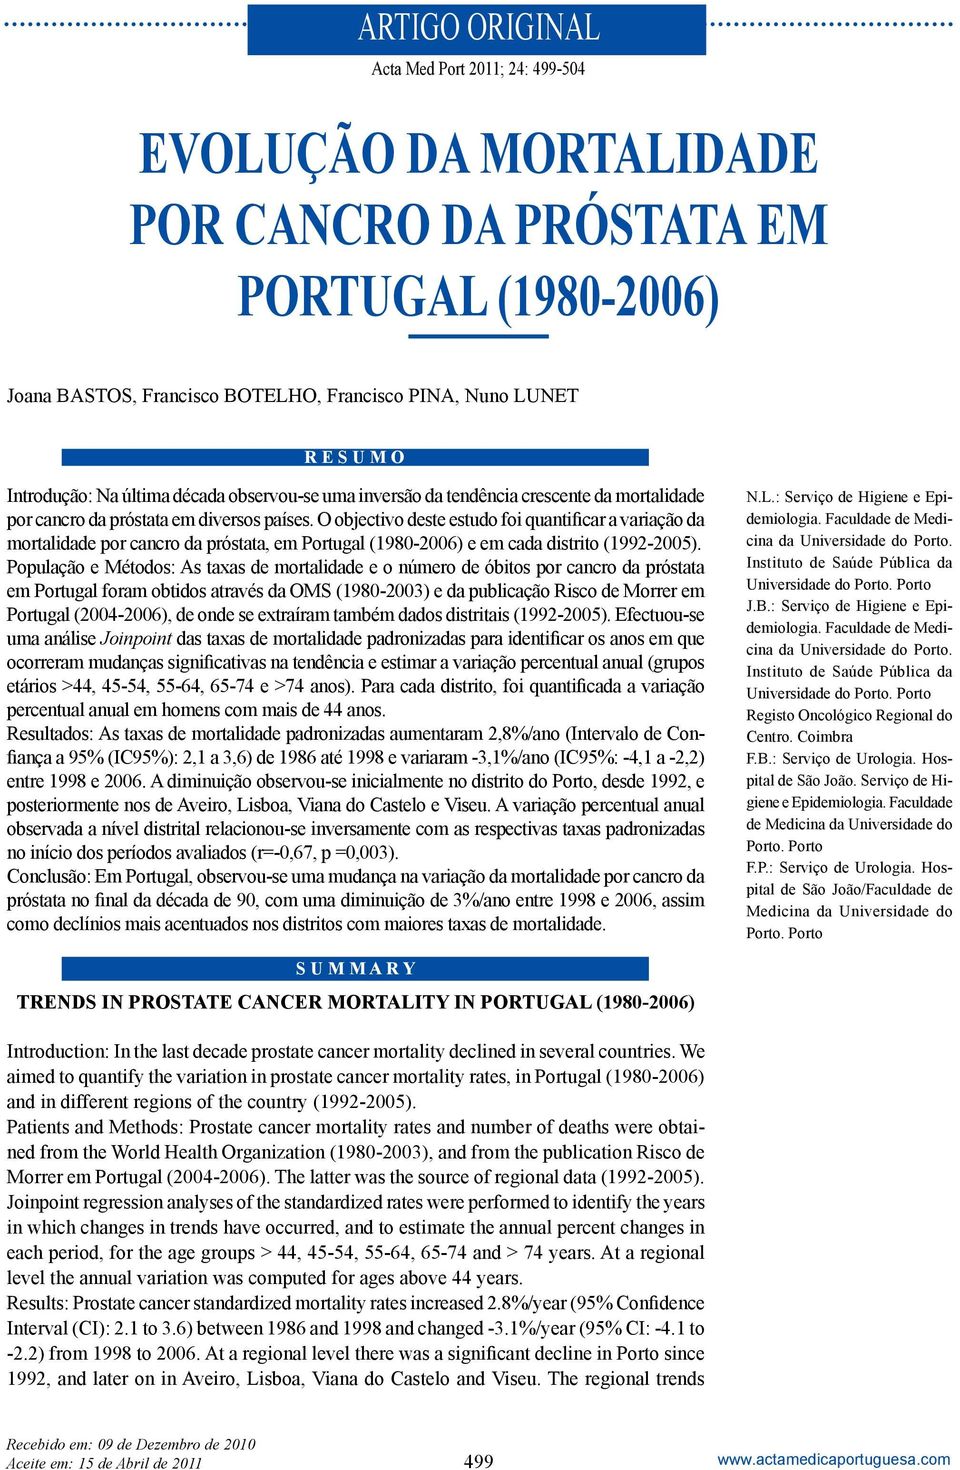 O objectivo deste estudo foi quantificar a variação da mortalidade por cancro da próstata, em Portugal (1980-2006) e em cada distrito (1992-2005).